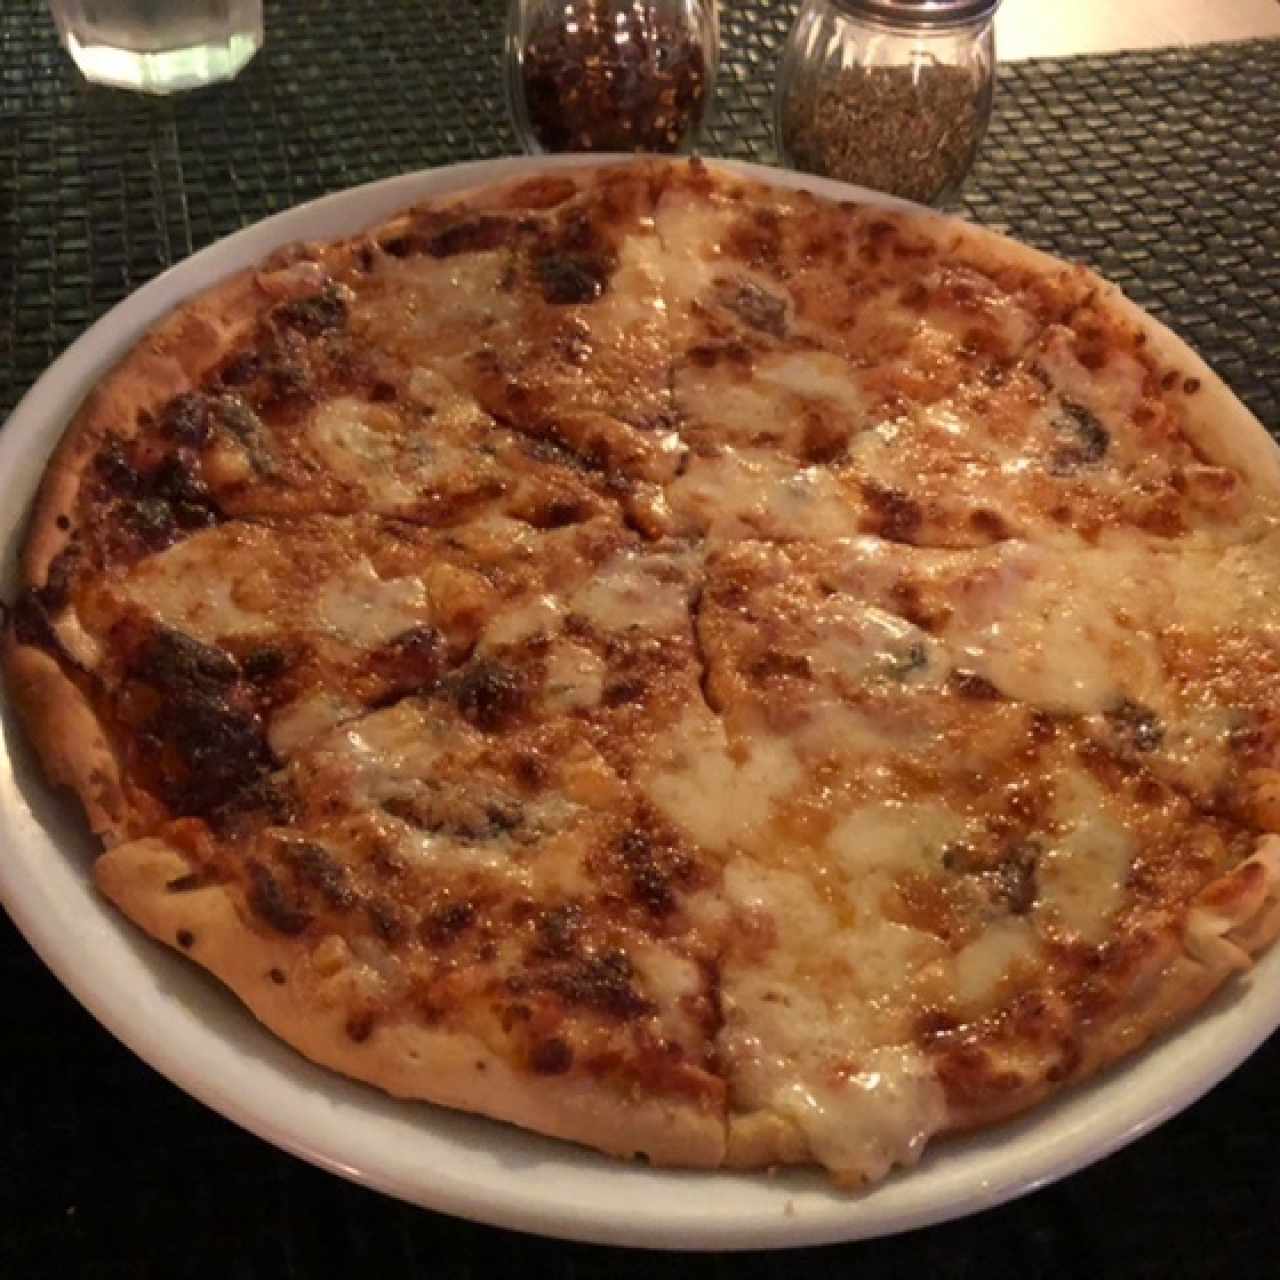 Pizza fusión - Cheese 4 you and anchovy